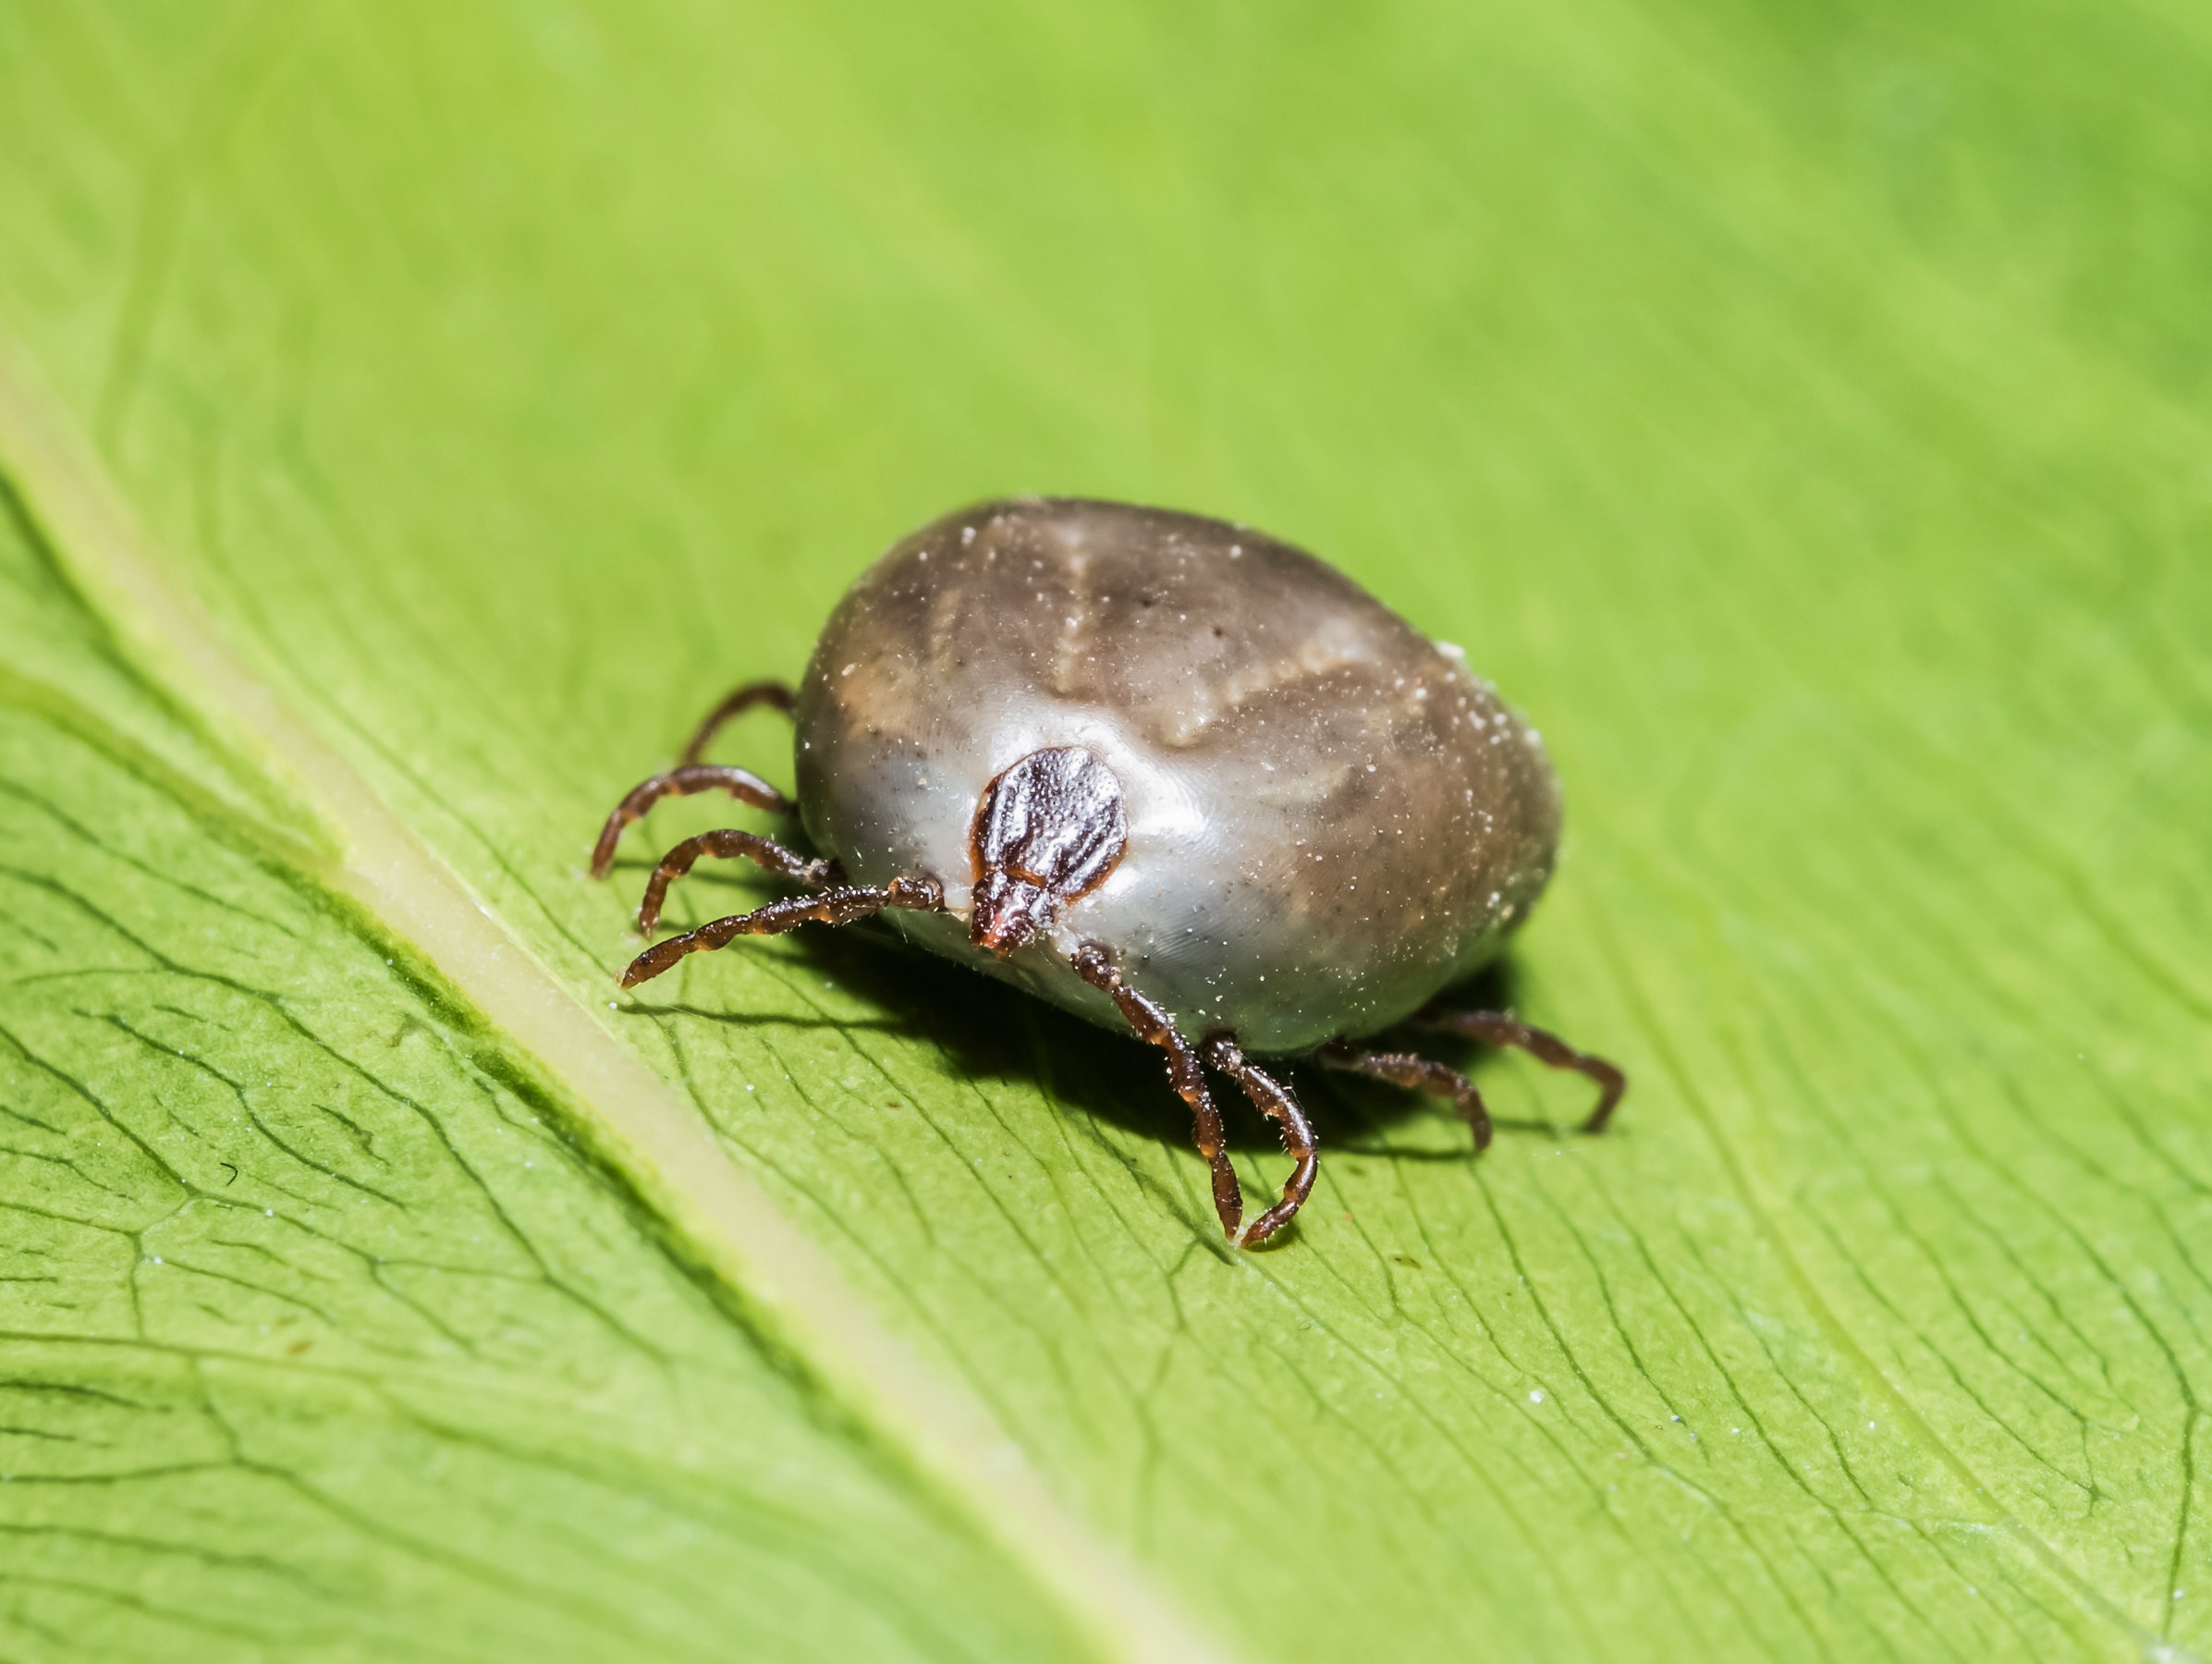 What Evolutionary Purpose Do Ticks Serve